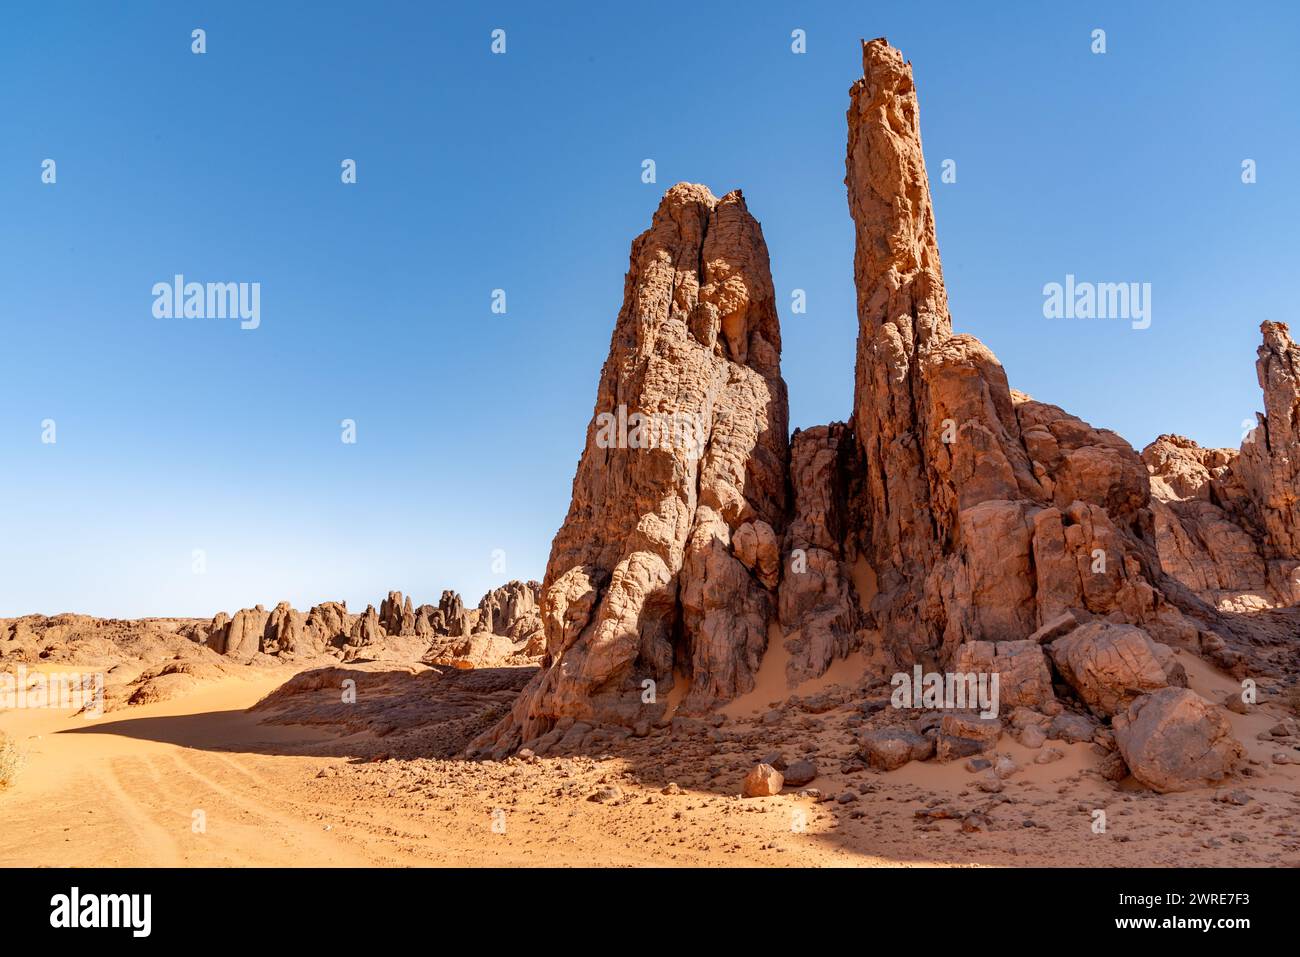 Paysage Tadrart dans le désert du Sahara, Algérie. Des sommets rocheux de grès rouge émergent du sable jaune. Banque D'Images